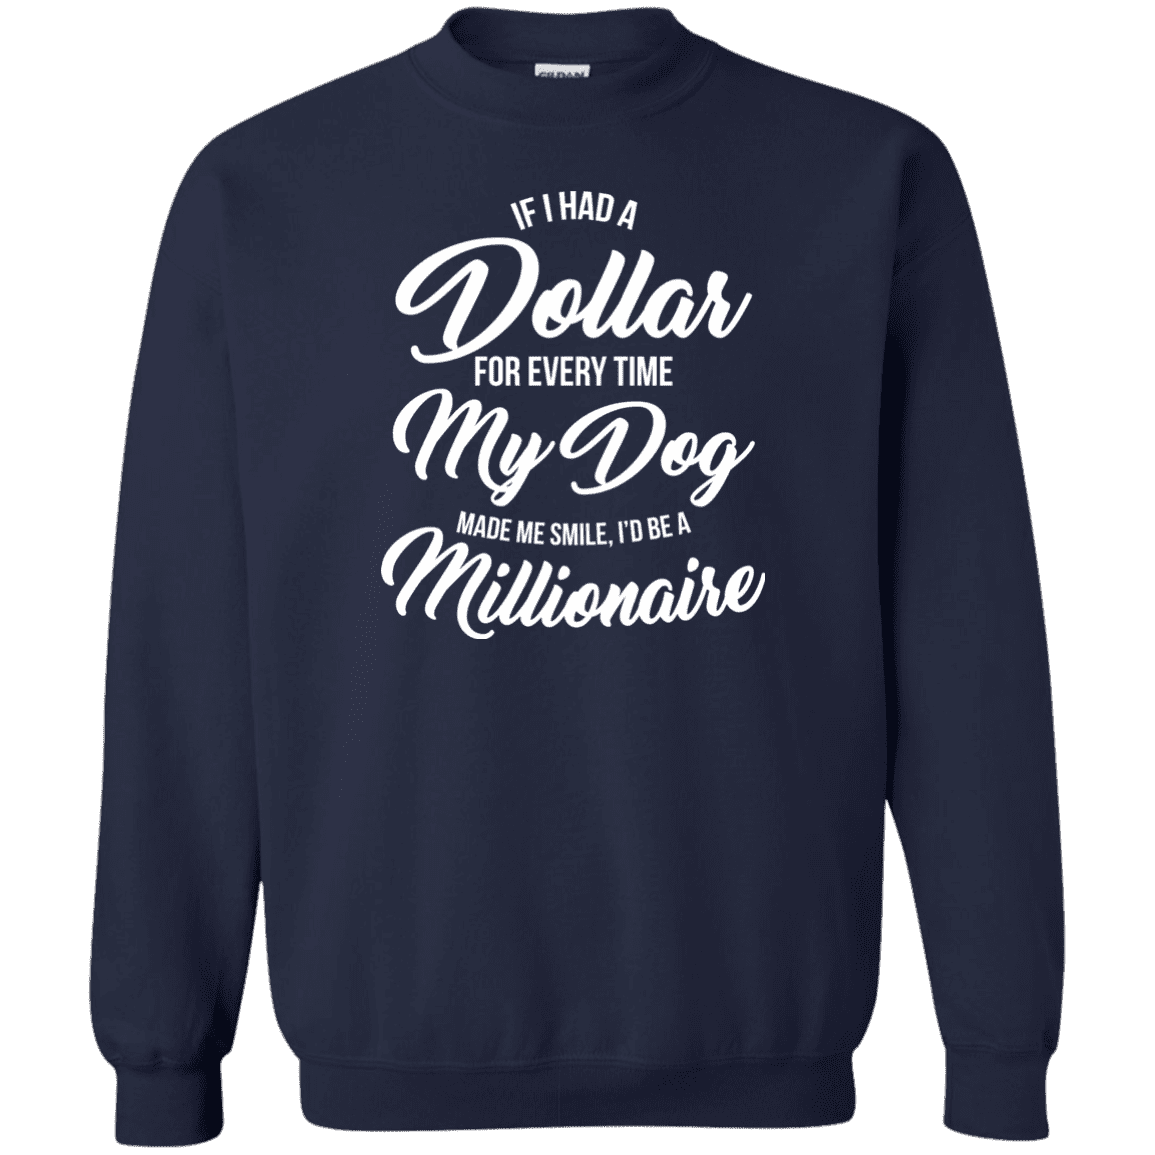 If I Had A Dollar - Sweatshirt.